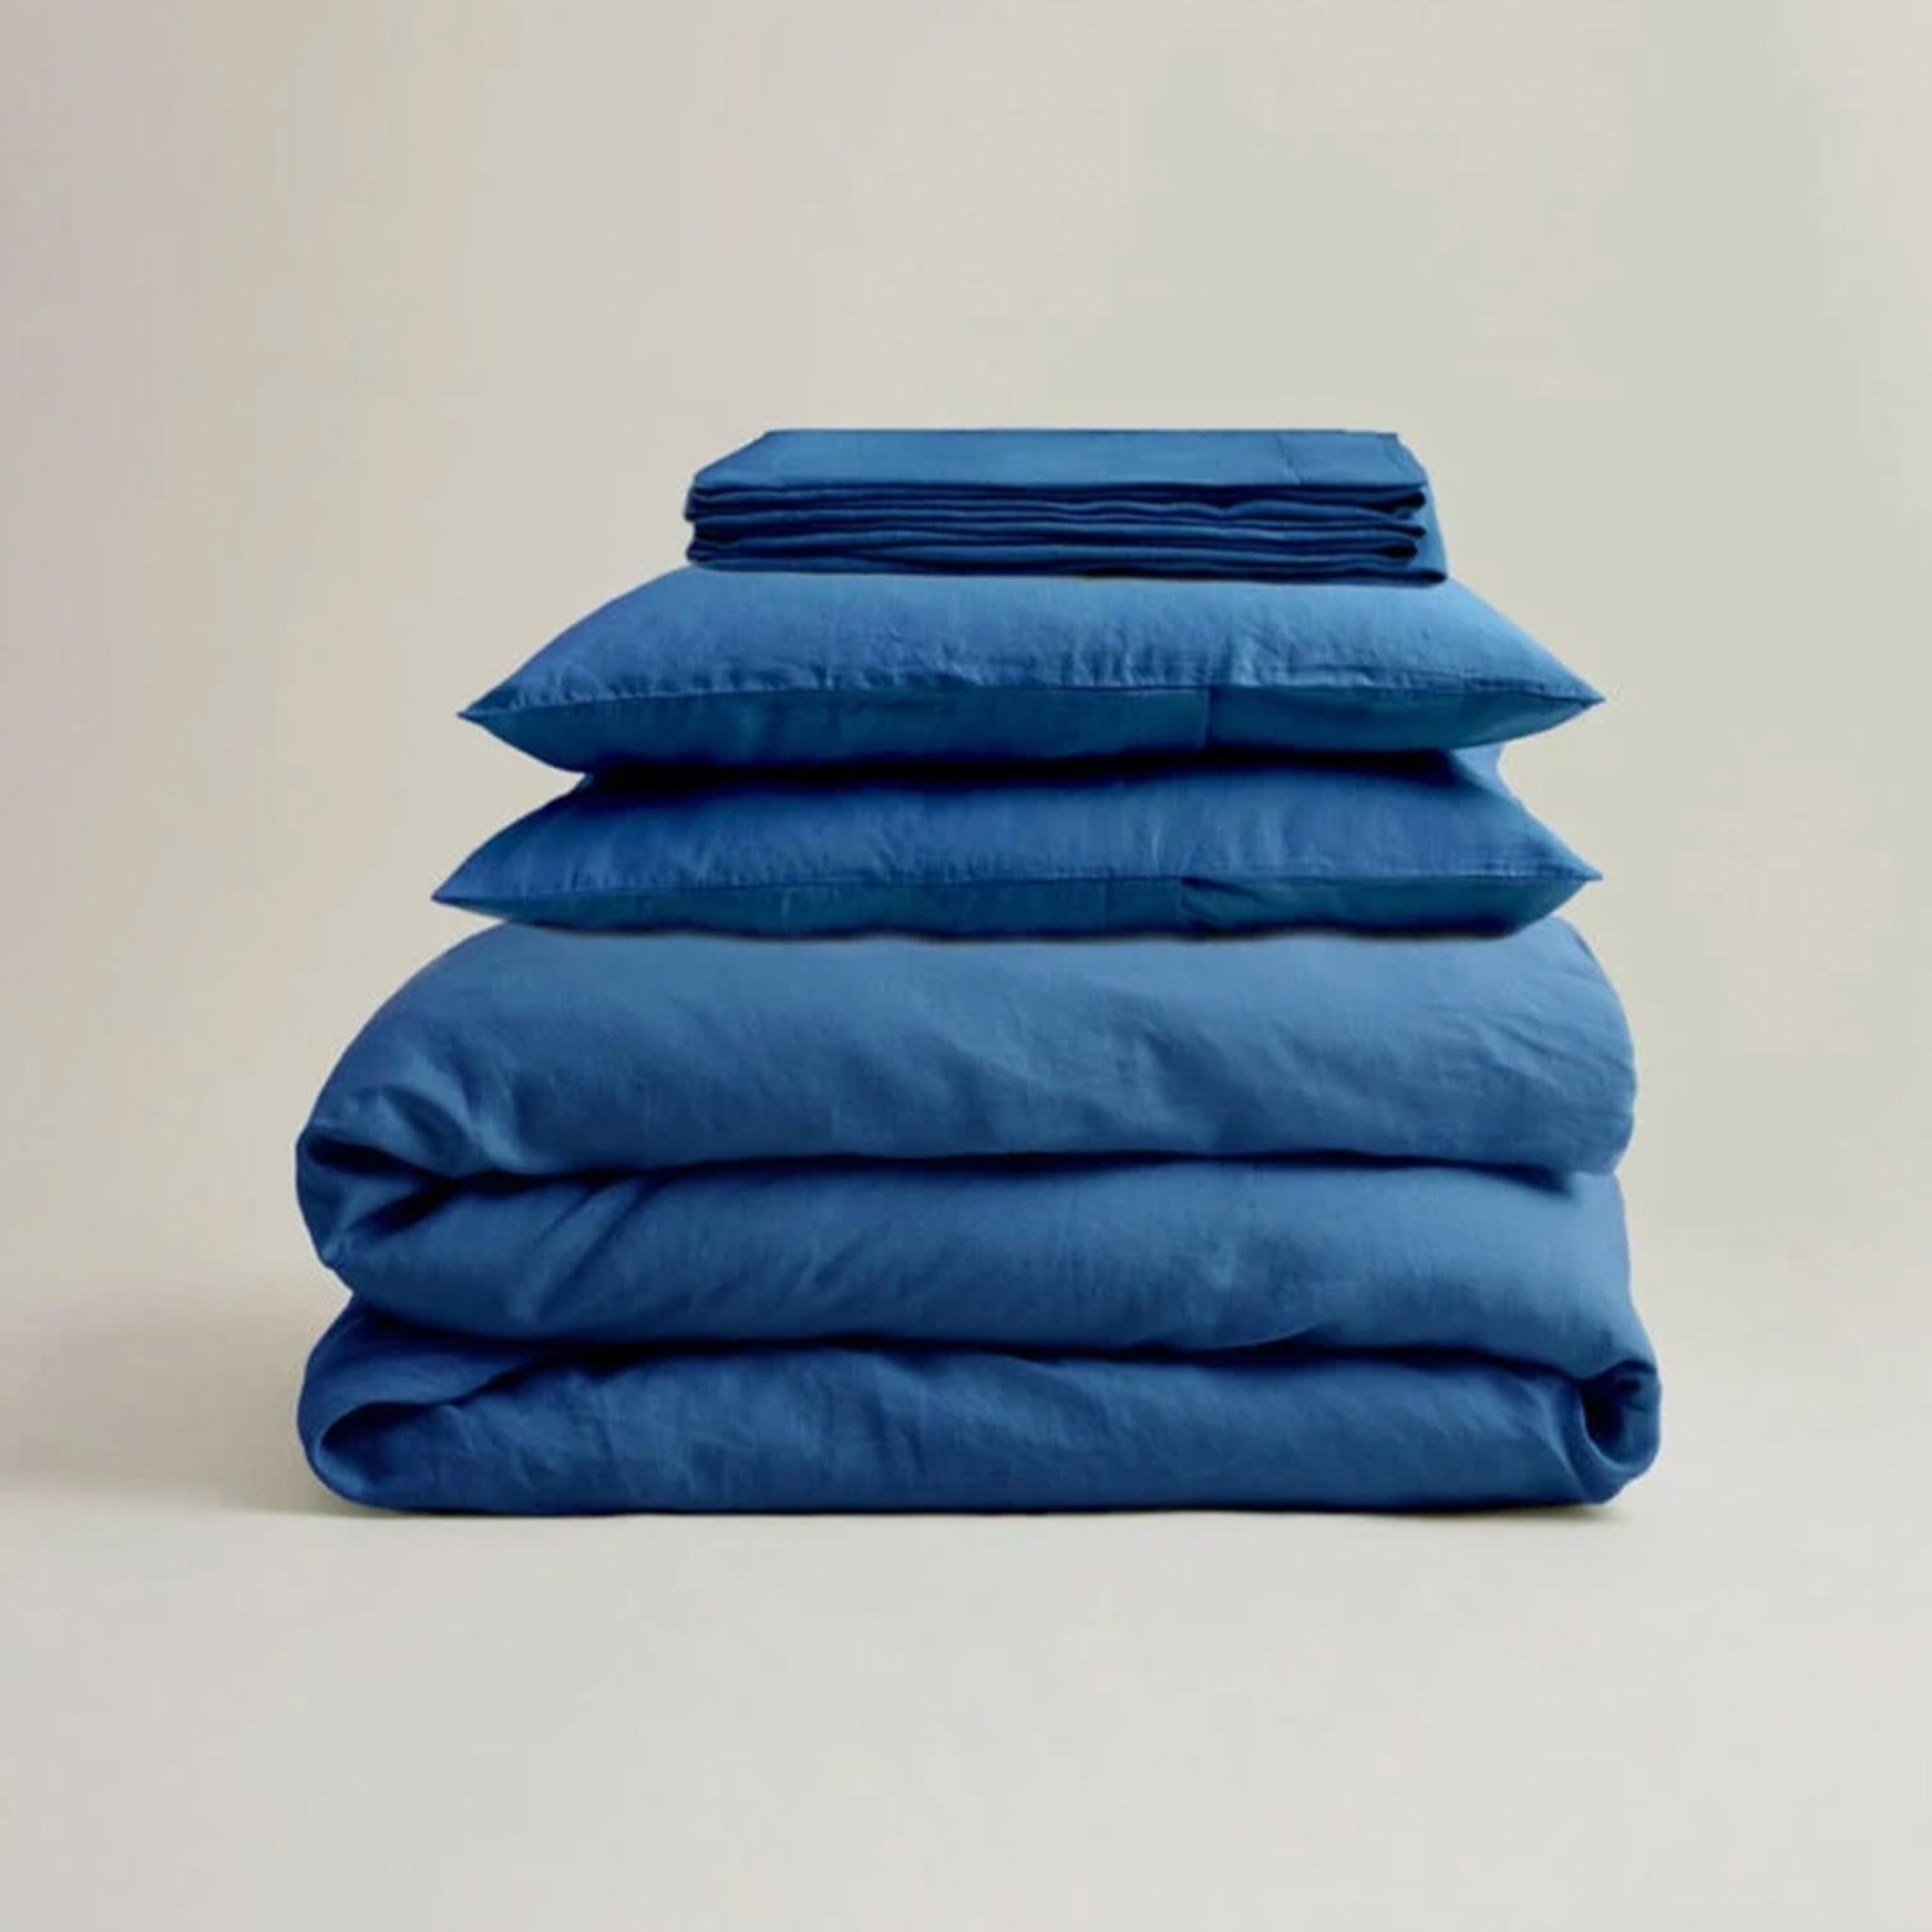 Set of 2 Mirto Pillowcases - Alternative view 1